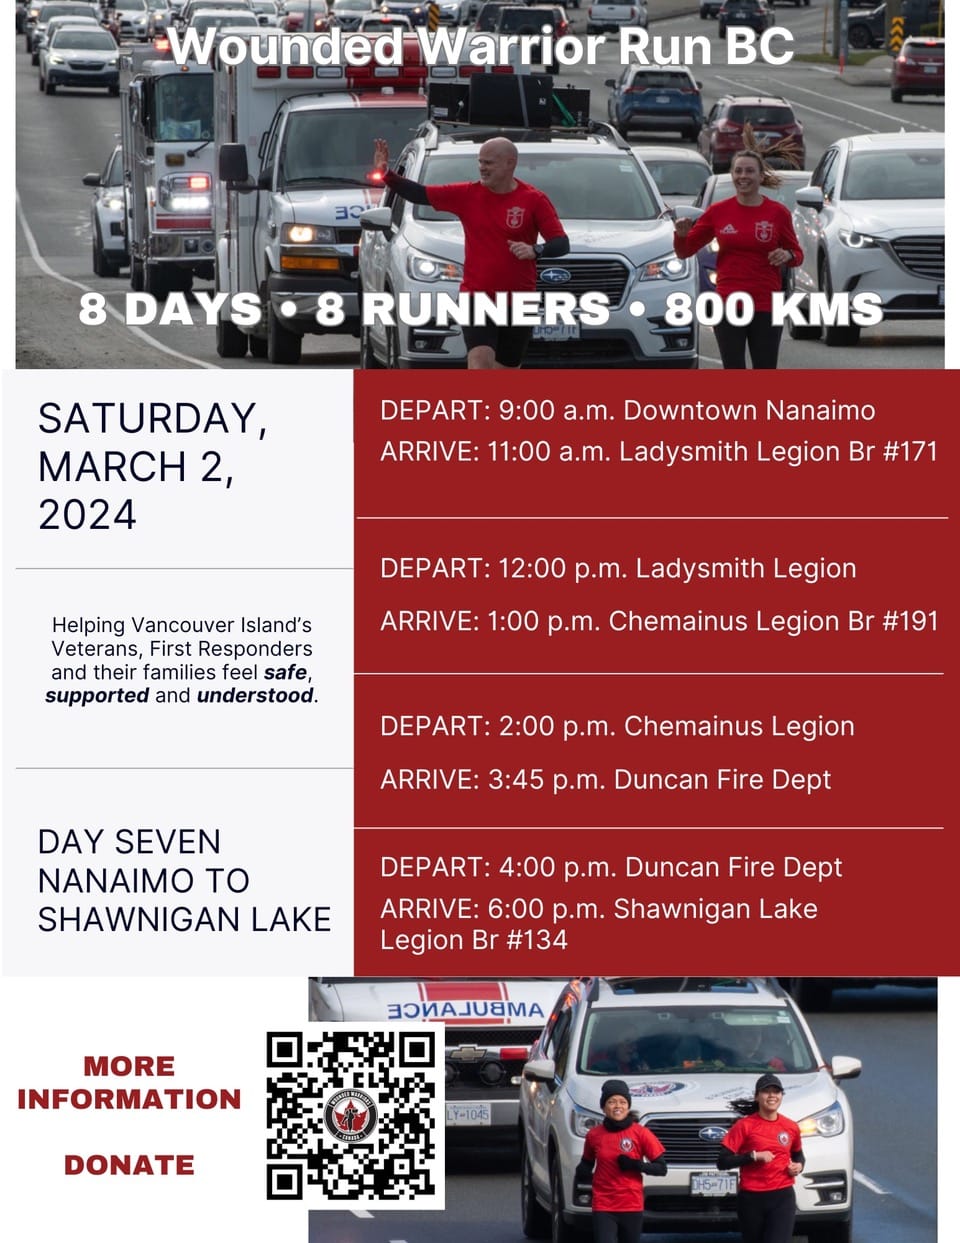 Wounded Warriors Run BC - Saturday March 2, 2024 Day 7 Nanaimo Lake to Shawnigan Lake